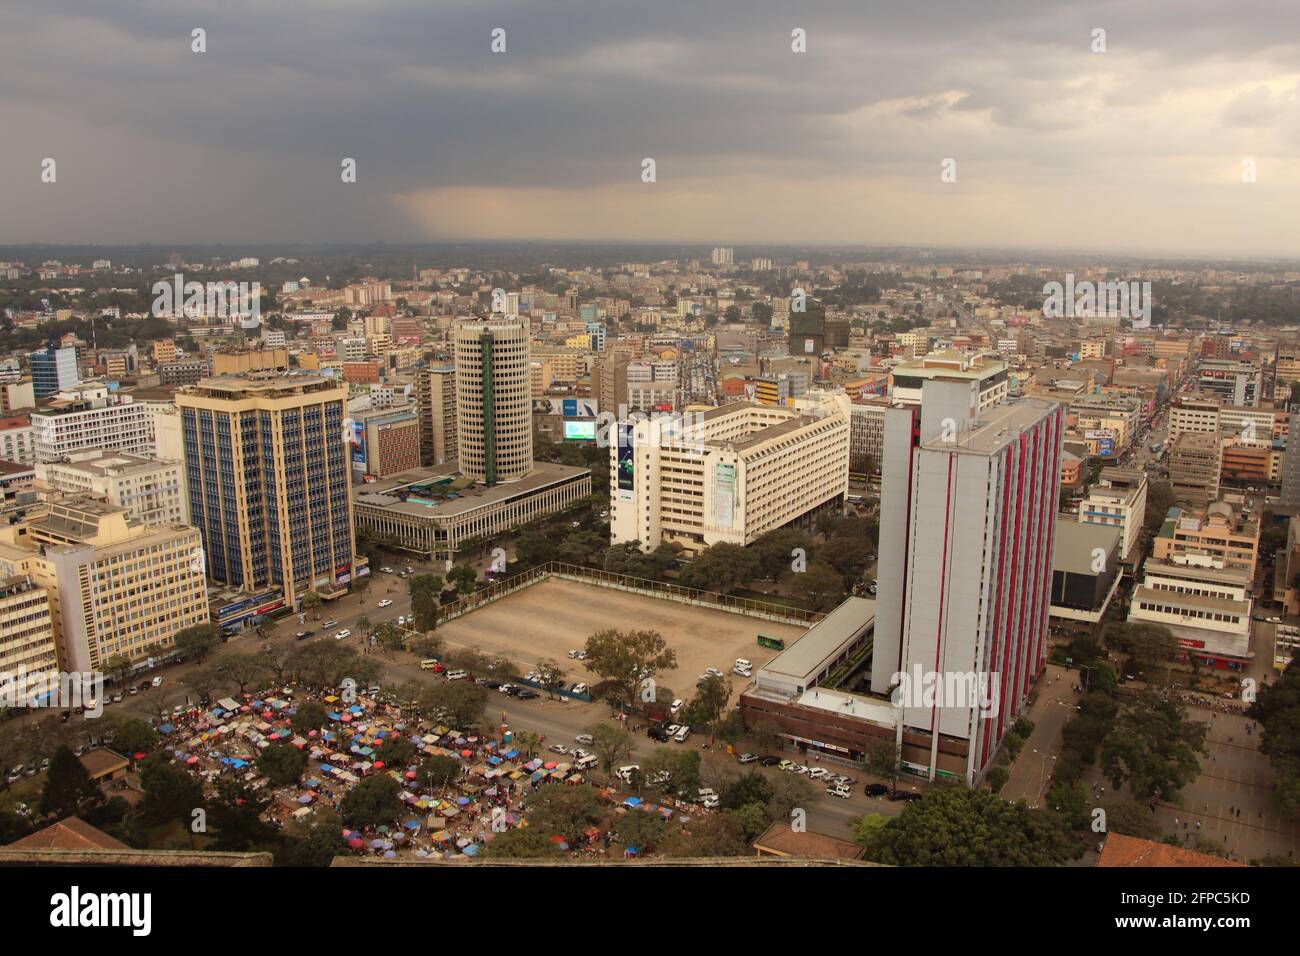 KENIA, NAIROBI - 29. Juli 2018: Blick vom Dach des Kenyatta International Convention Center in Richtung Central Business District Stockfoto